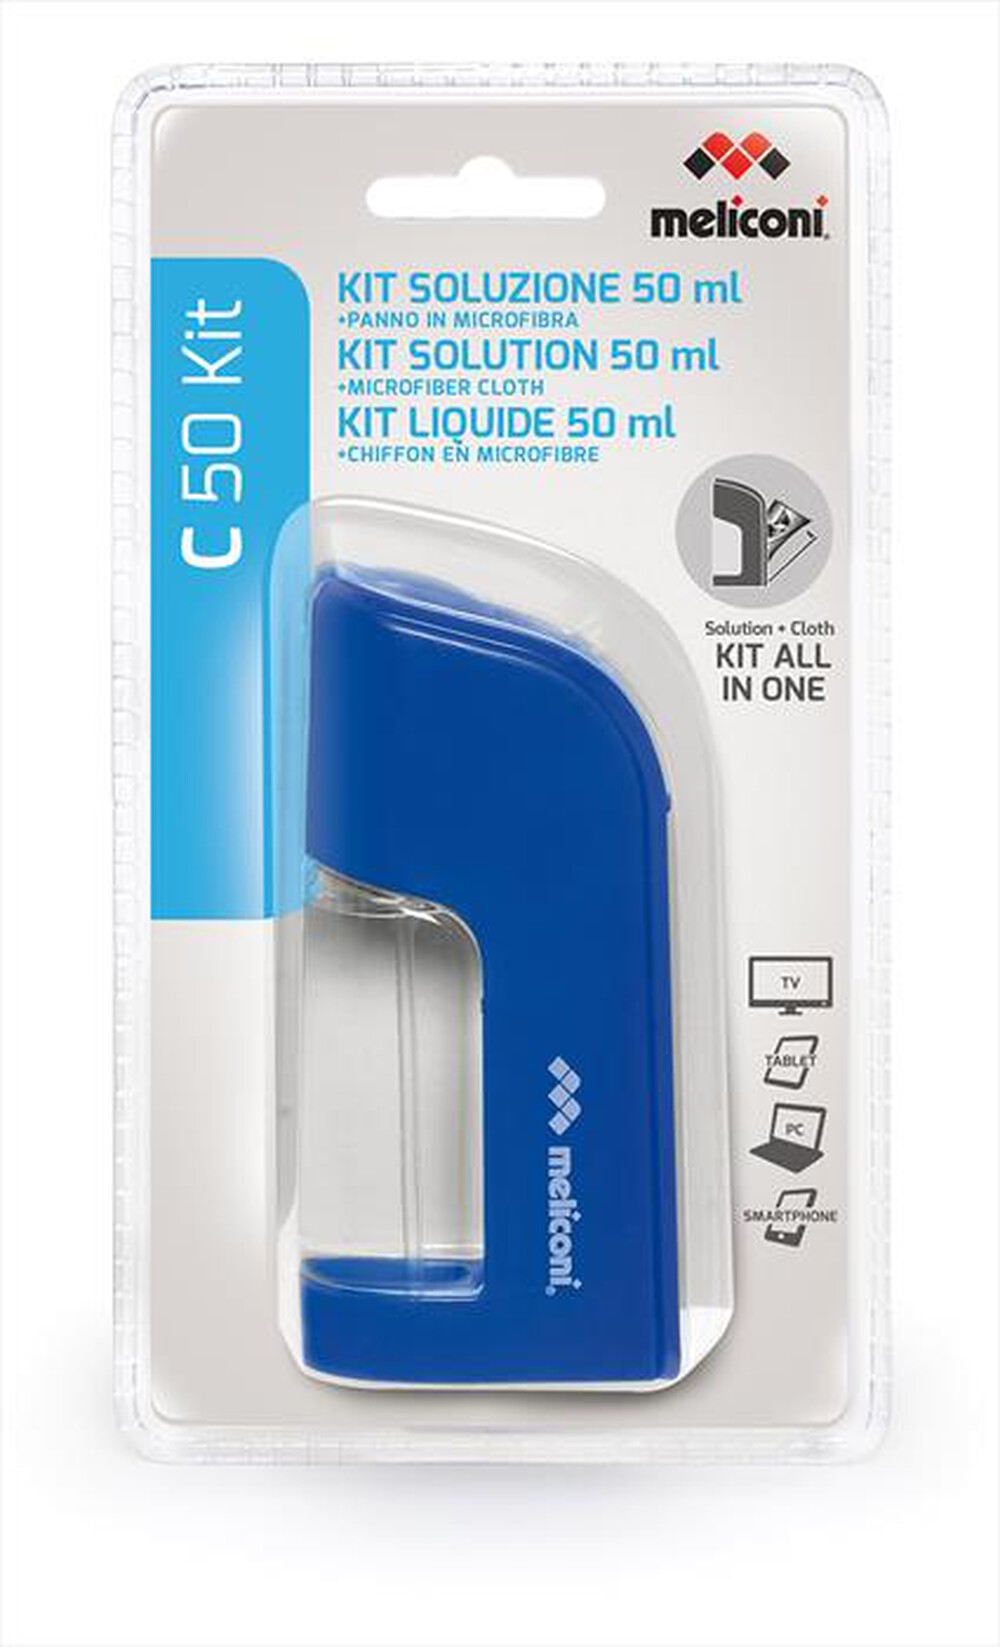 "MELICONI - C50 Kit Soluzione + Panno microfibra - Blu"